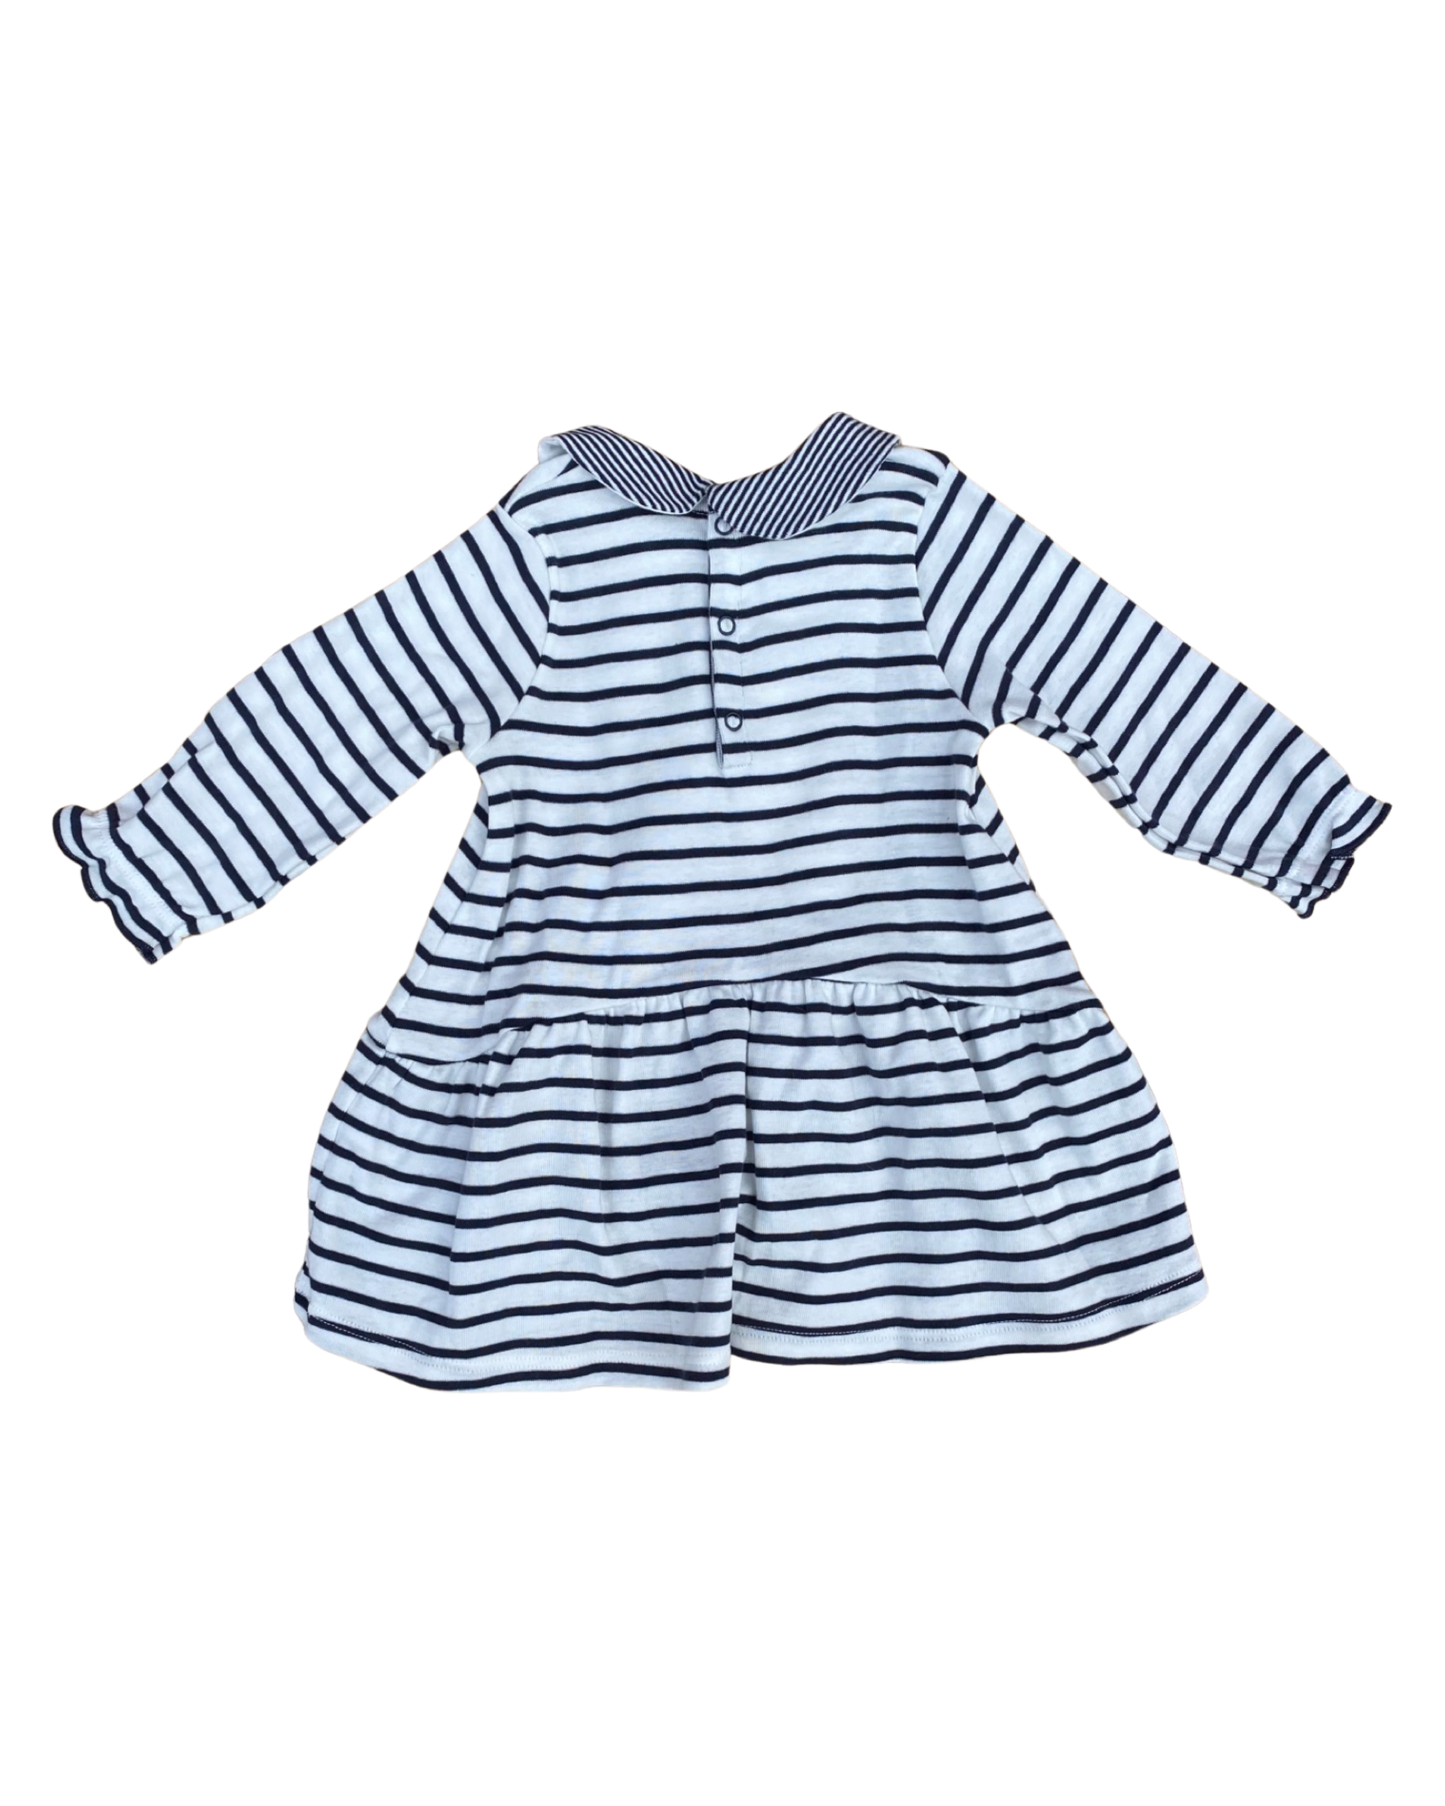 Petit Bateau breton striped jersey dress (size 3-6mths)